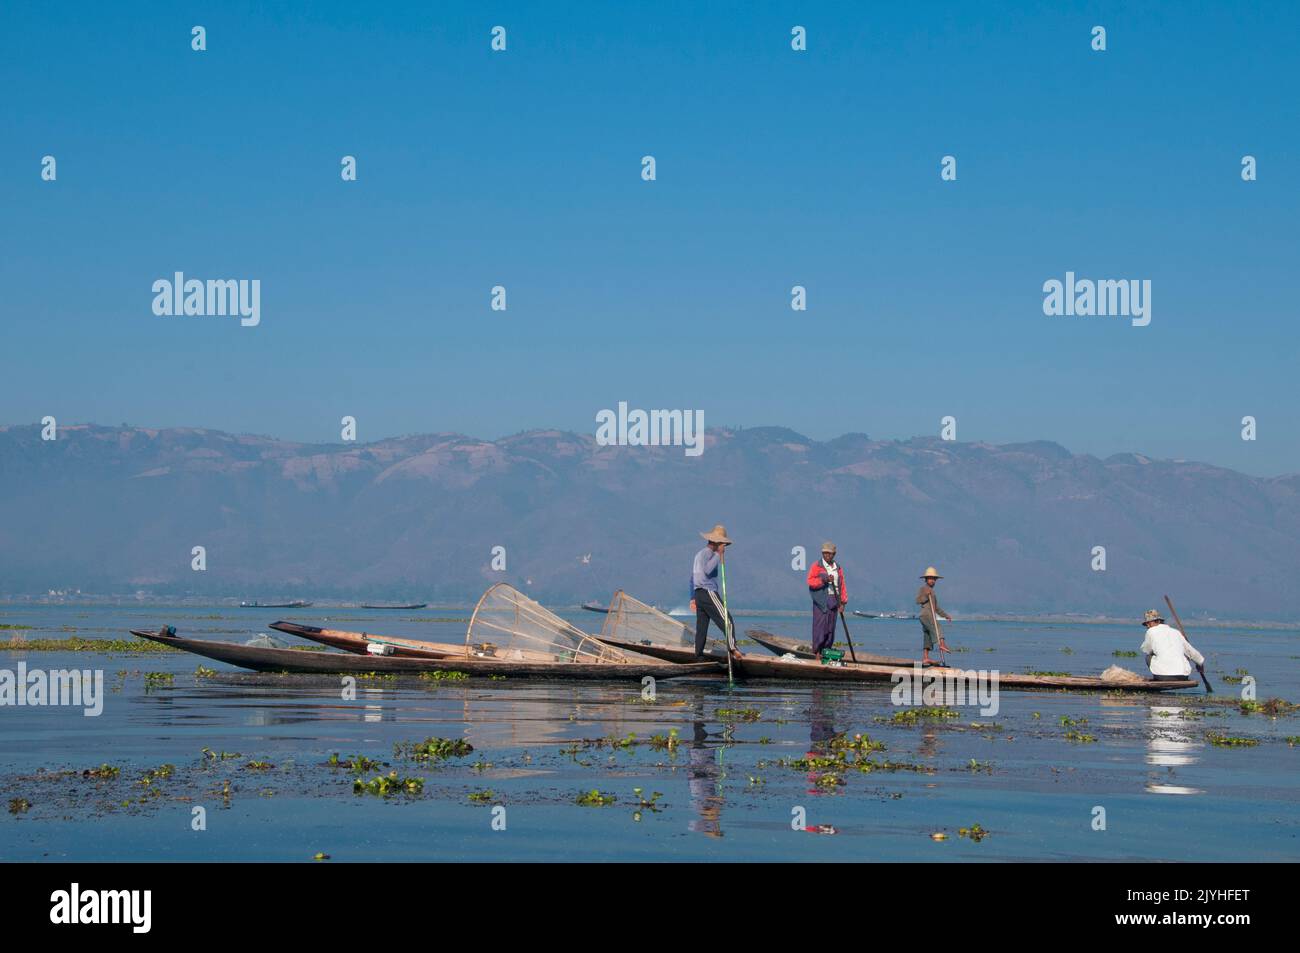 Birmania / Myanmar: Los pescadores Intha que reman en la pierna en el lago Inle, estado de Shan. El Lago Inle es un lago de agua dulce situado en el estado de Shan. Es el segundo lago más grande de Myanmar y uno de los más altos a una altitud de 880 m (2.900 pies). La gente del Lago Inle (llamada Intha), unos 70.000 de ellos, viven en cuatro pueblos que bordean el lago, en numerosos pueblos pequeños a lo largo de las orillas del lago, y en el mismo lago. La población consiste predominantemente de Intha, con una mezcla de otros Shan, Taungyo, Pa-O (Taungthu), Danu, Kayah, Grupos étnicos de Danaw y Bamar. Foto de stock